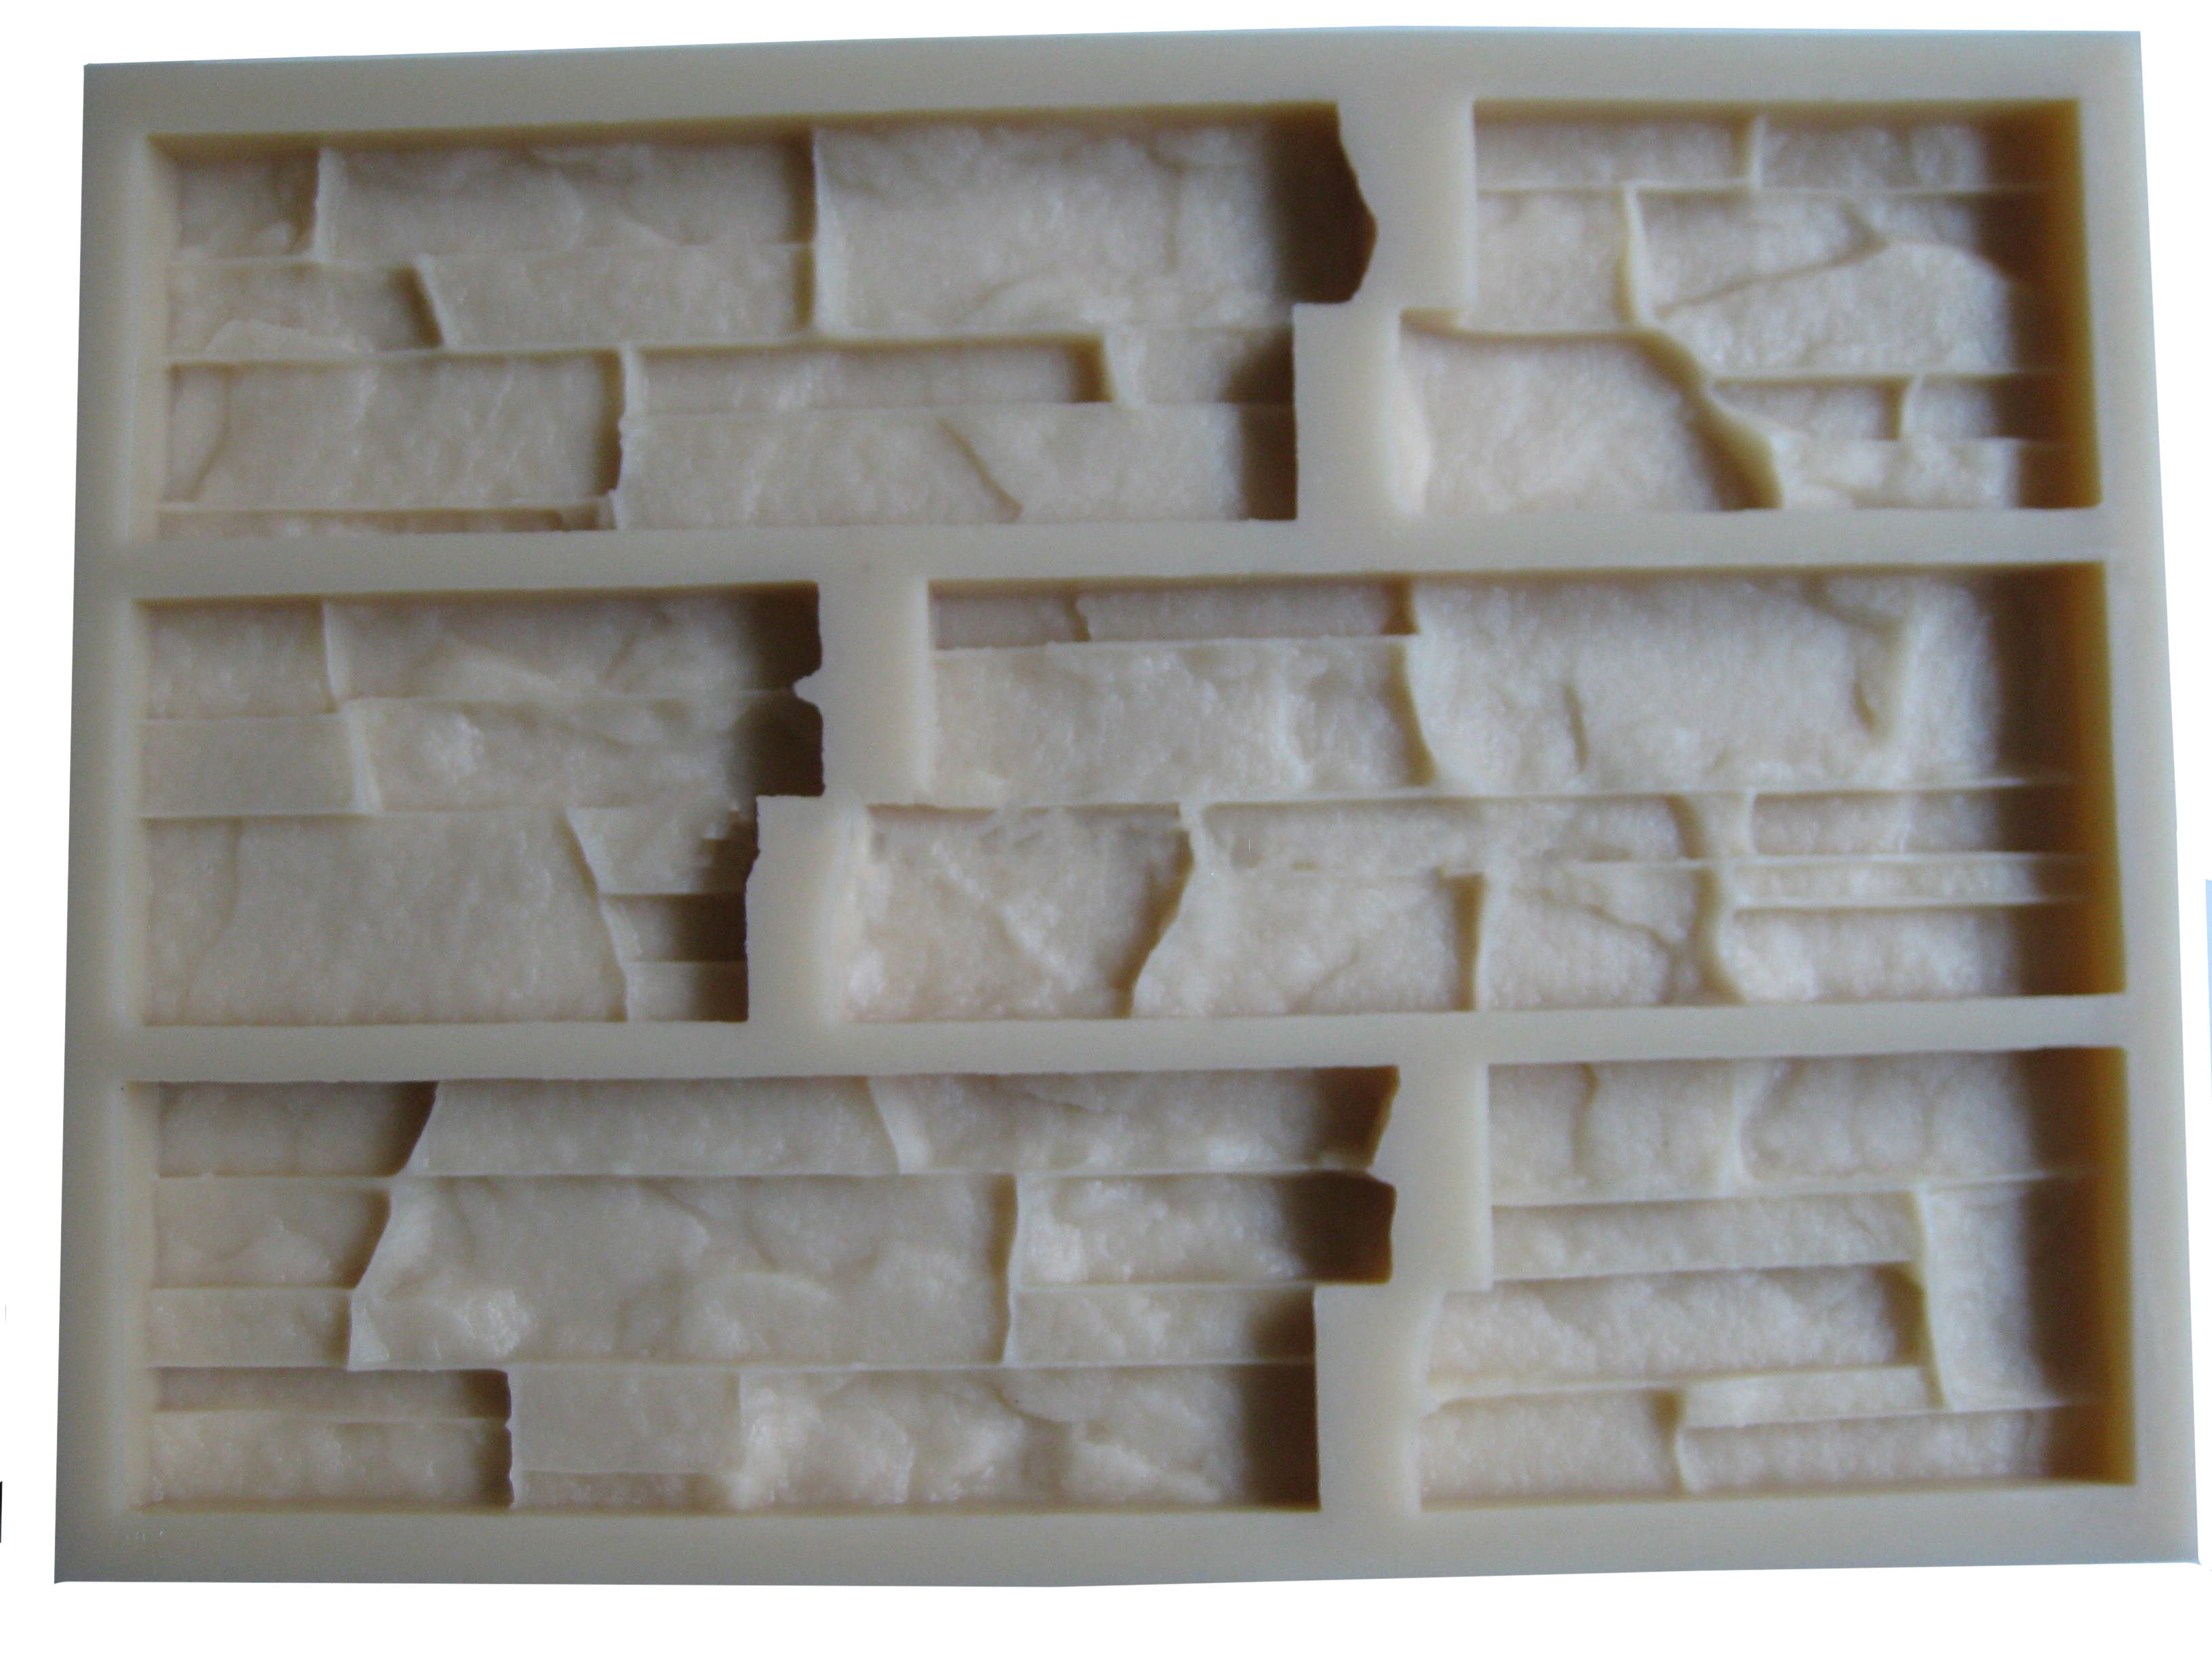 Memorial plaque plastic mold plaster concrete mould 10" x 3/4" thick 